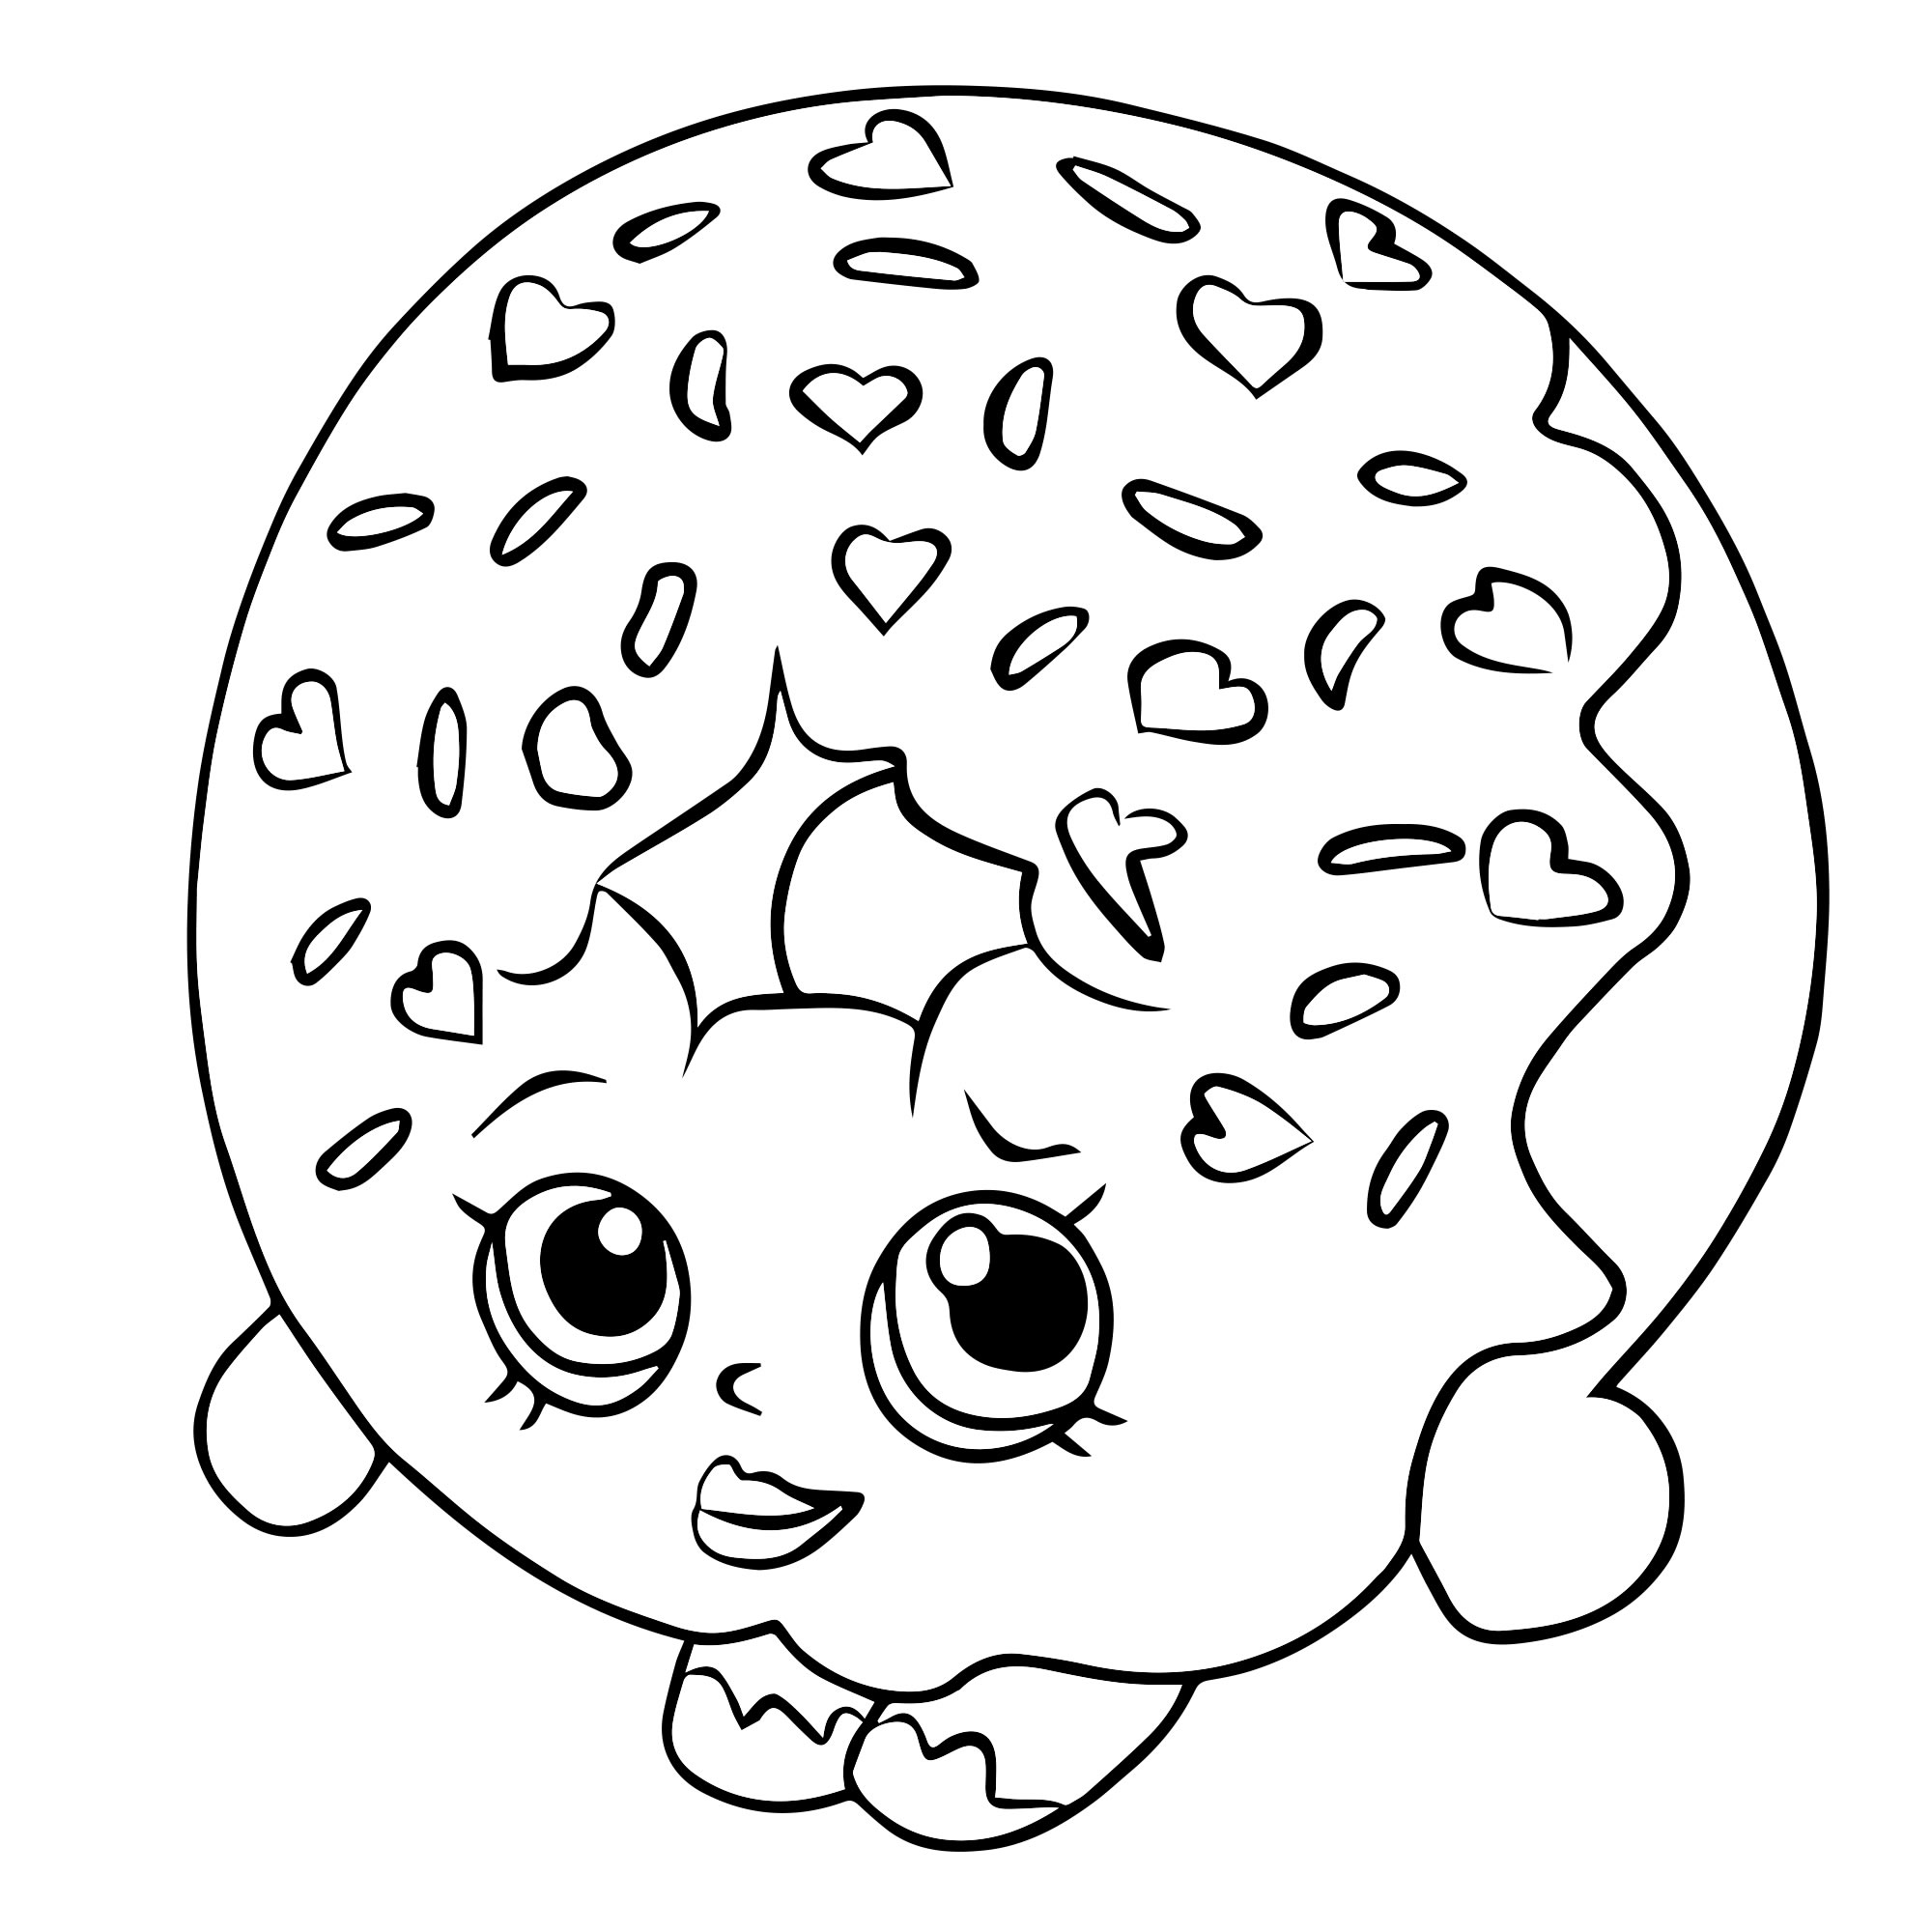 Пончик из мультика раскраска для детей